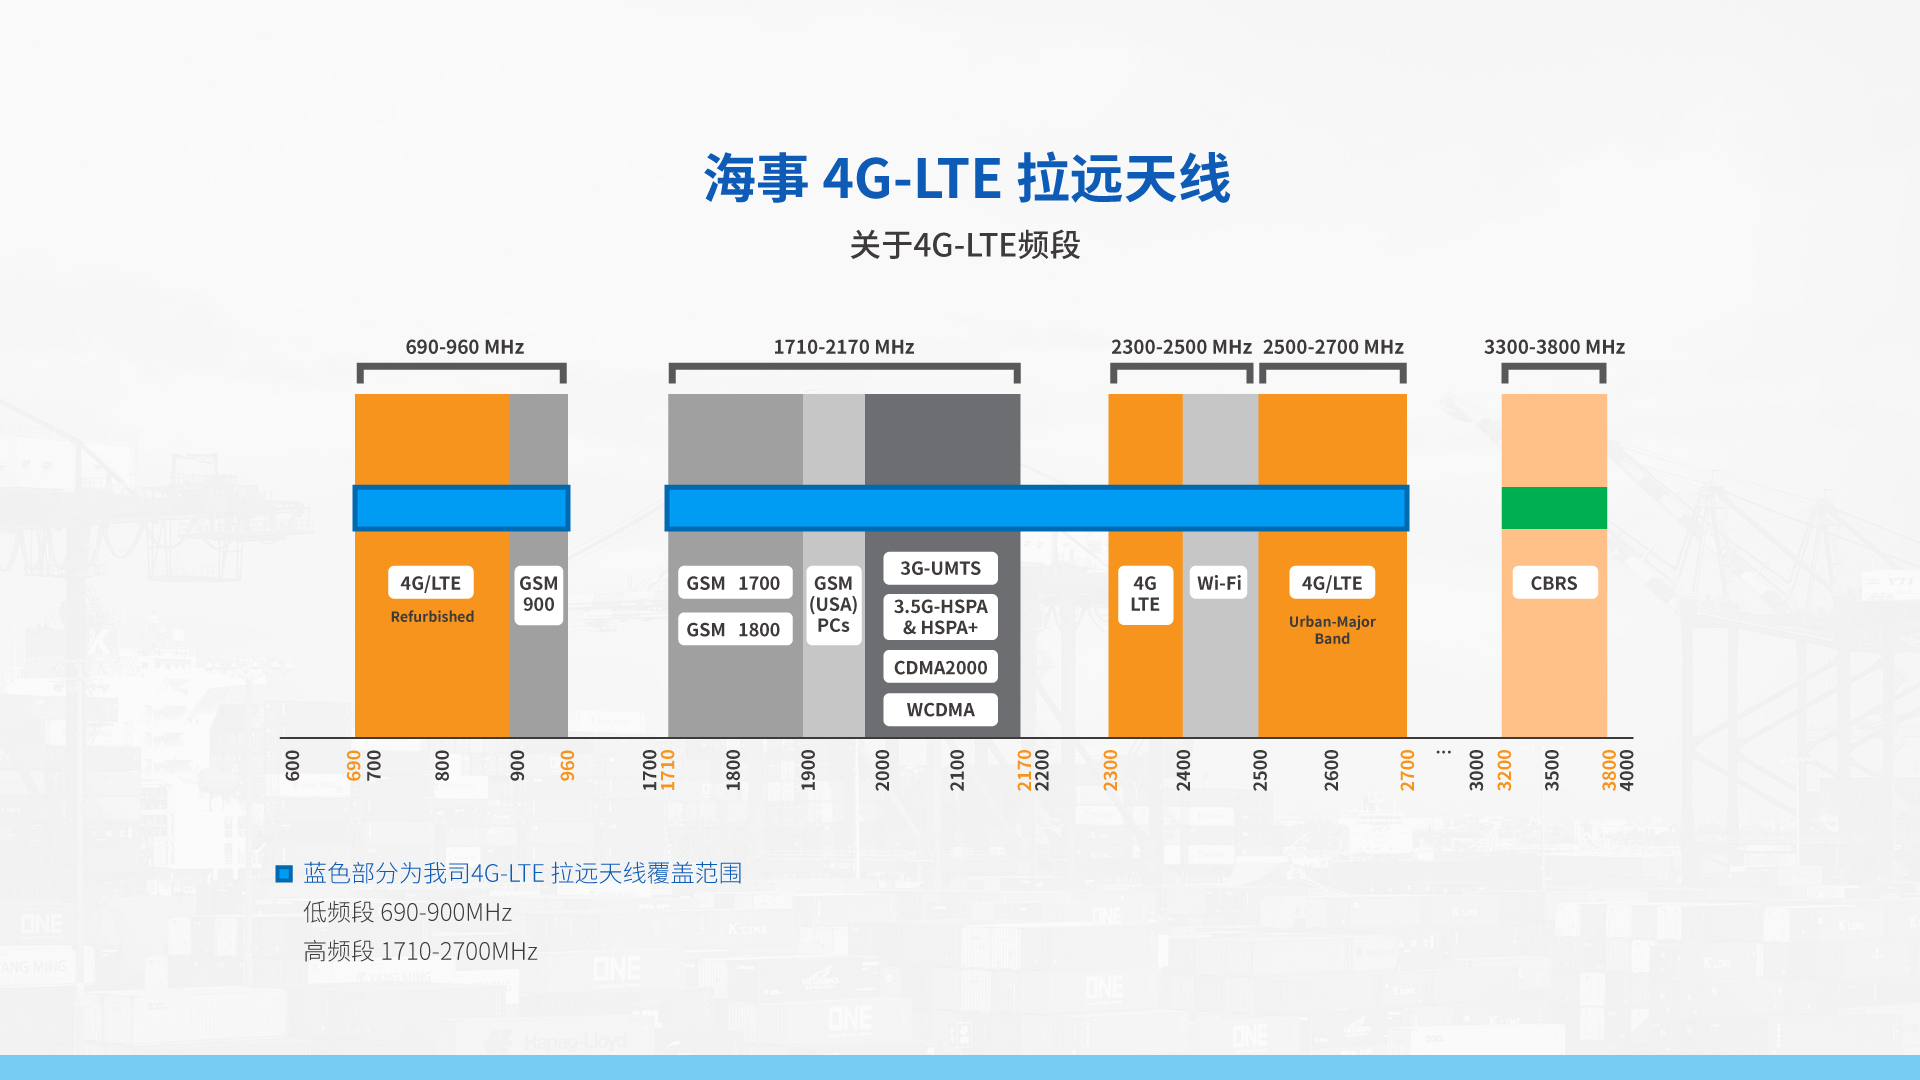 全球版海事4G-LTE CPE